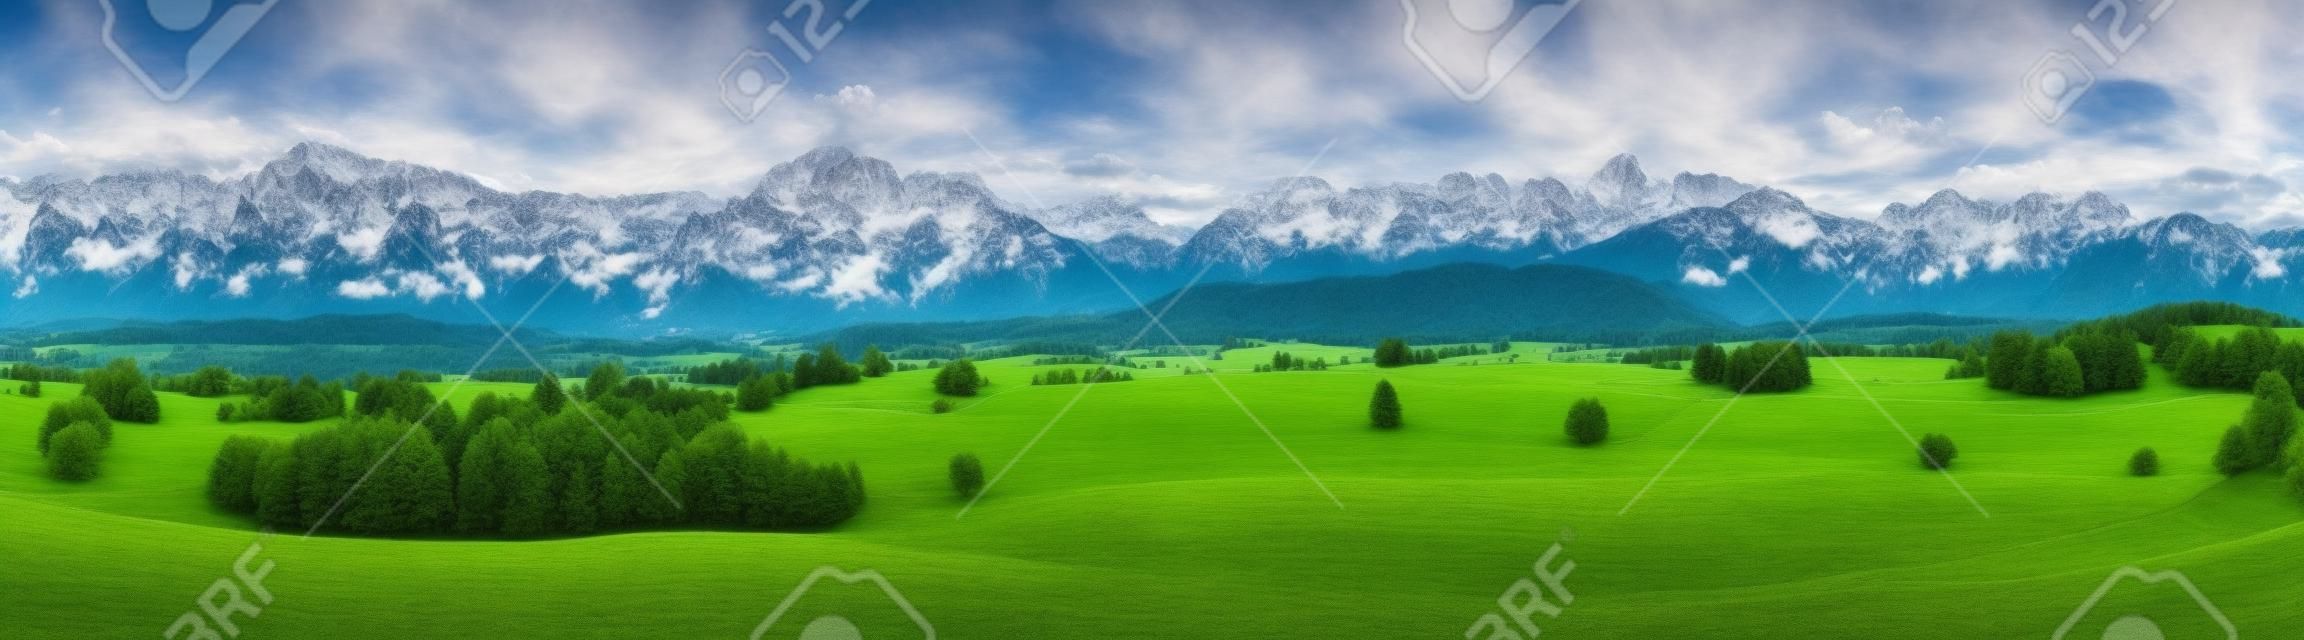 Szeroka panorama krajobraz w Bawarii, w Niemczech, w górach Alpy